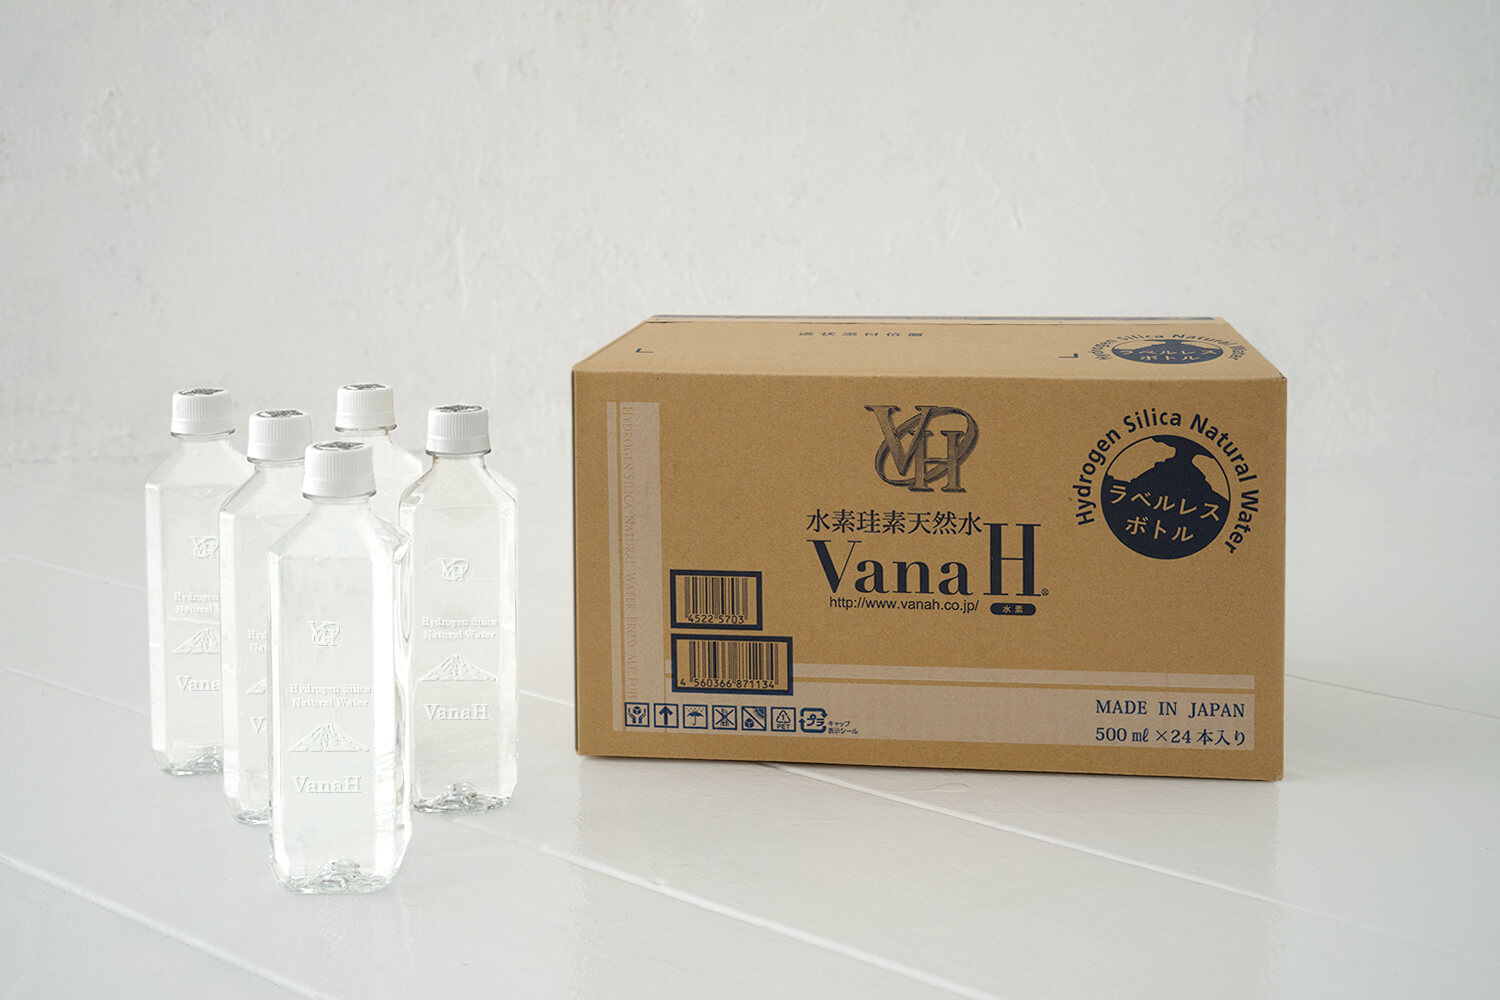 【送料無料】バナエイチ【VanaH】水素珪素天然水 500ml×24本入り